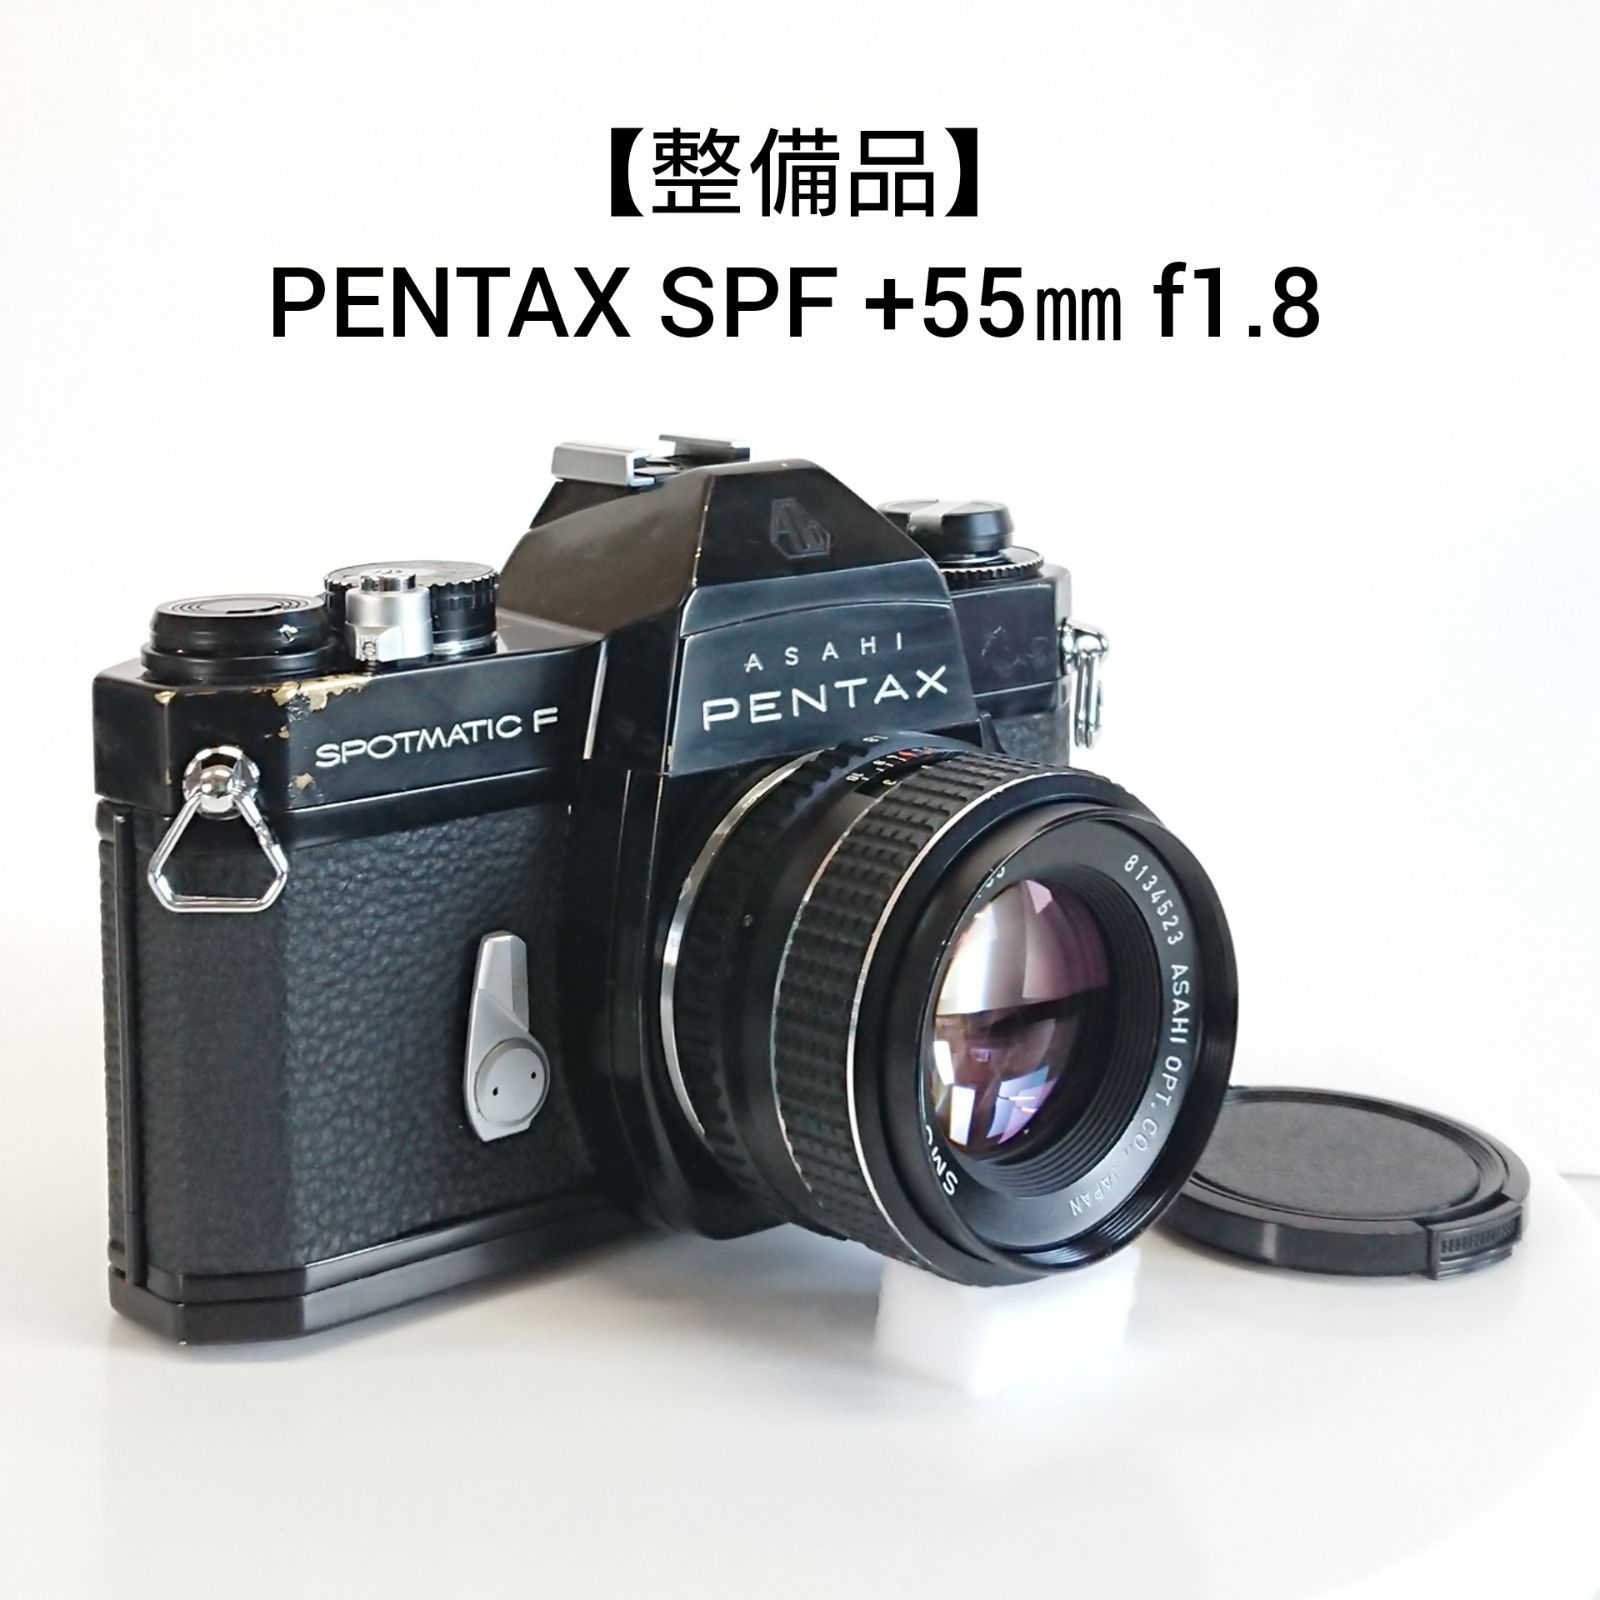 きれい SP PENTAX 55mmf1.8 +スーパータクマー  完動品